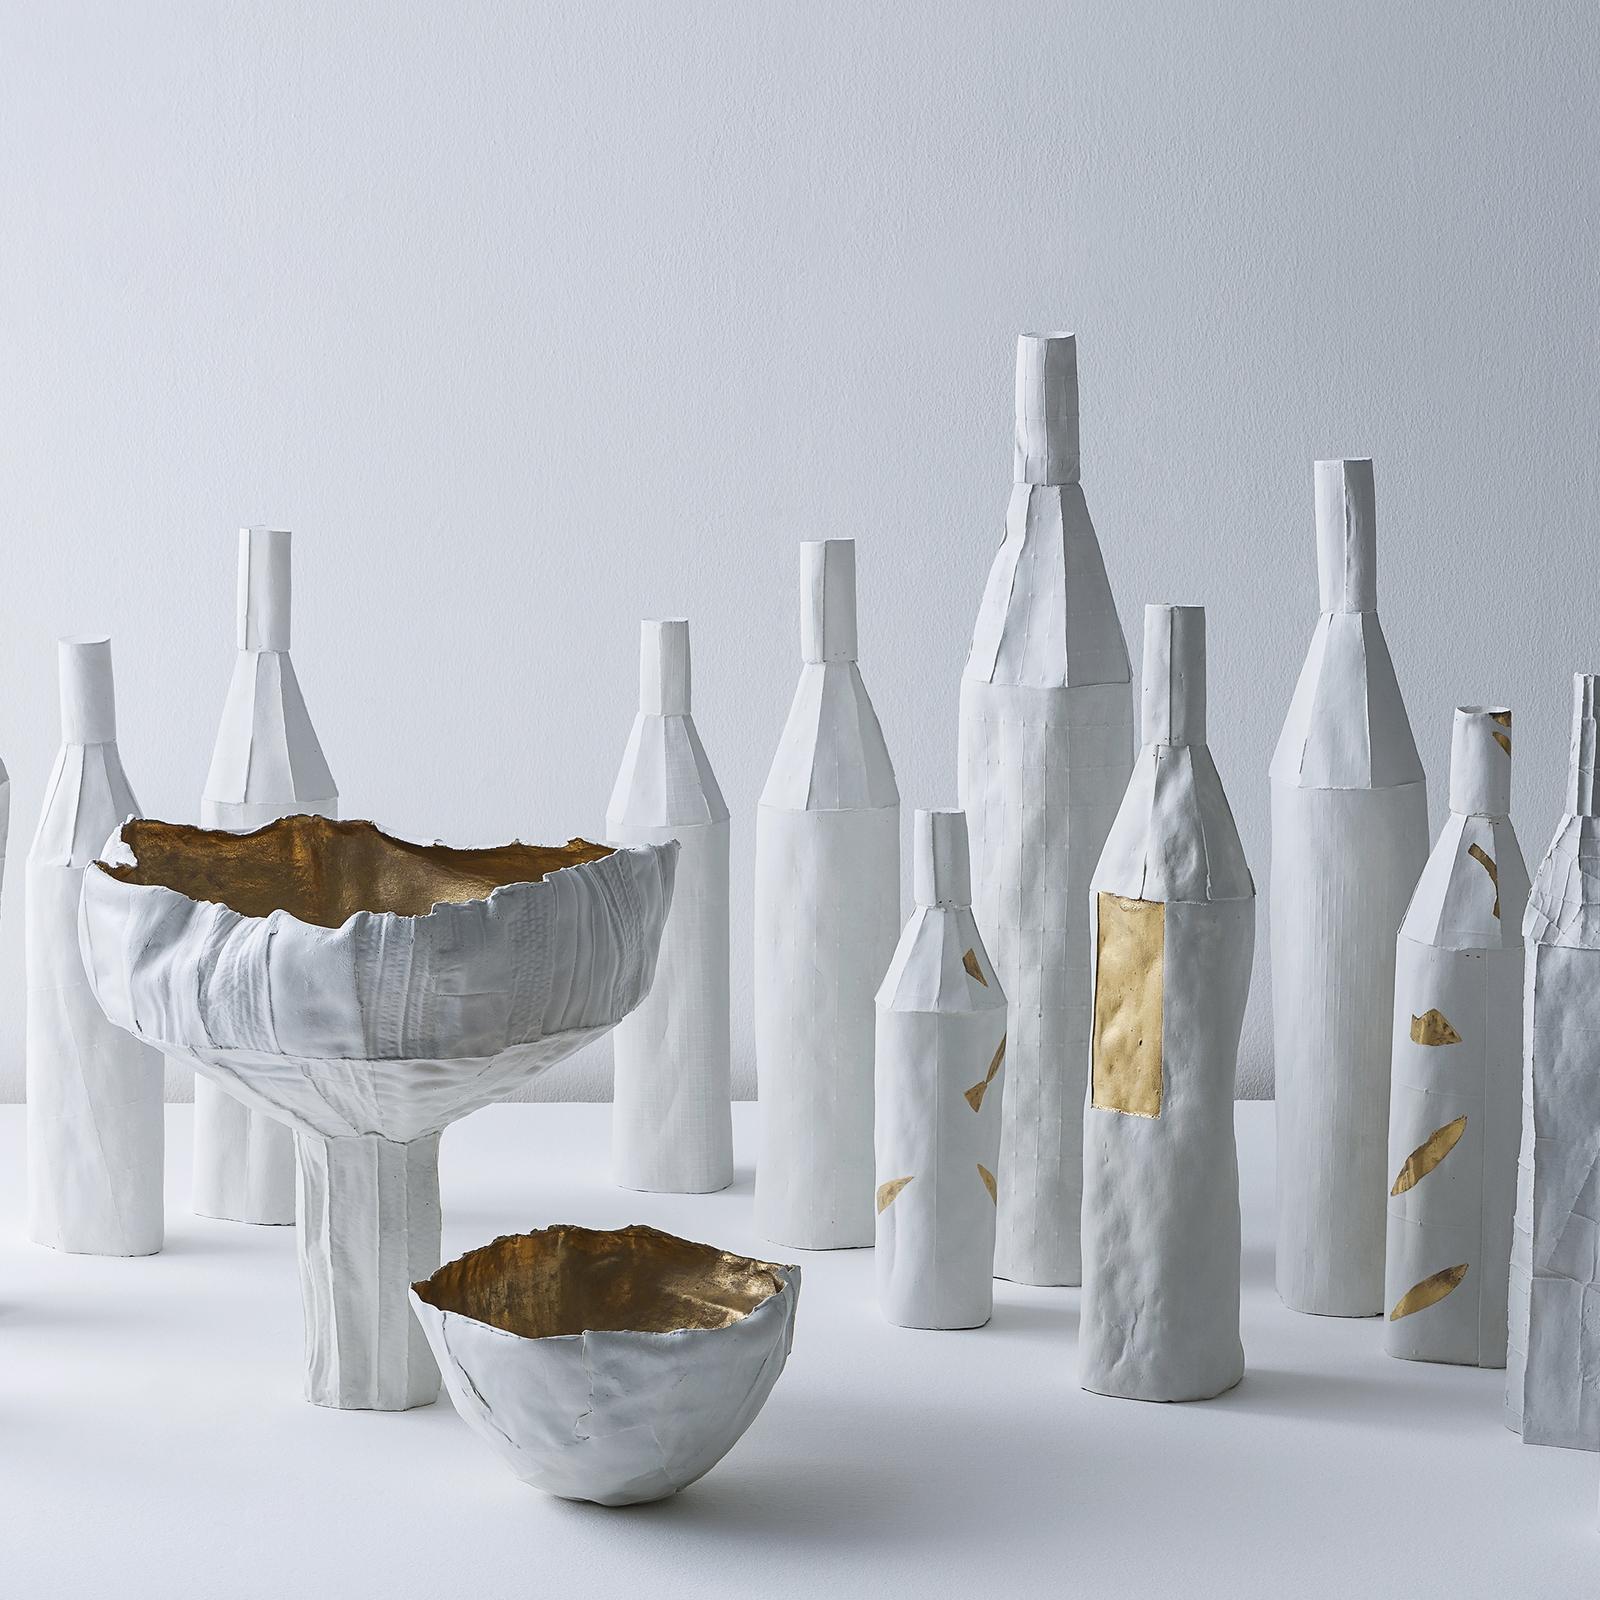 Italian Contemporary Ceramic Cartocci Liscia Texture White and Gold Decorative Bottle #2